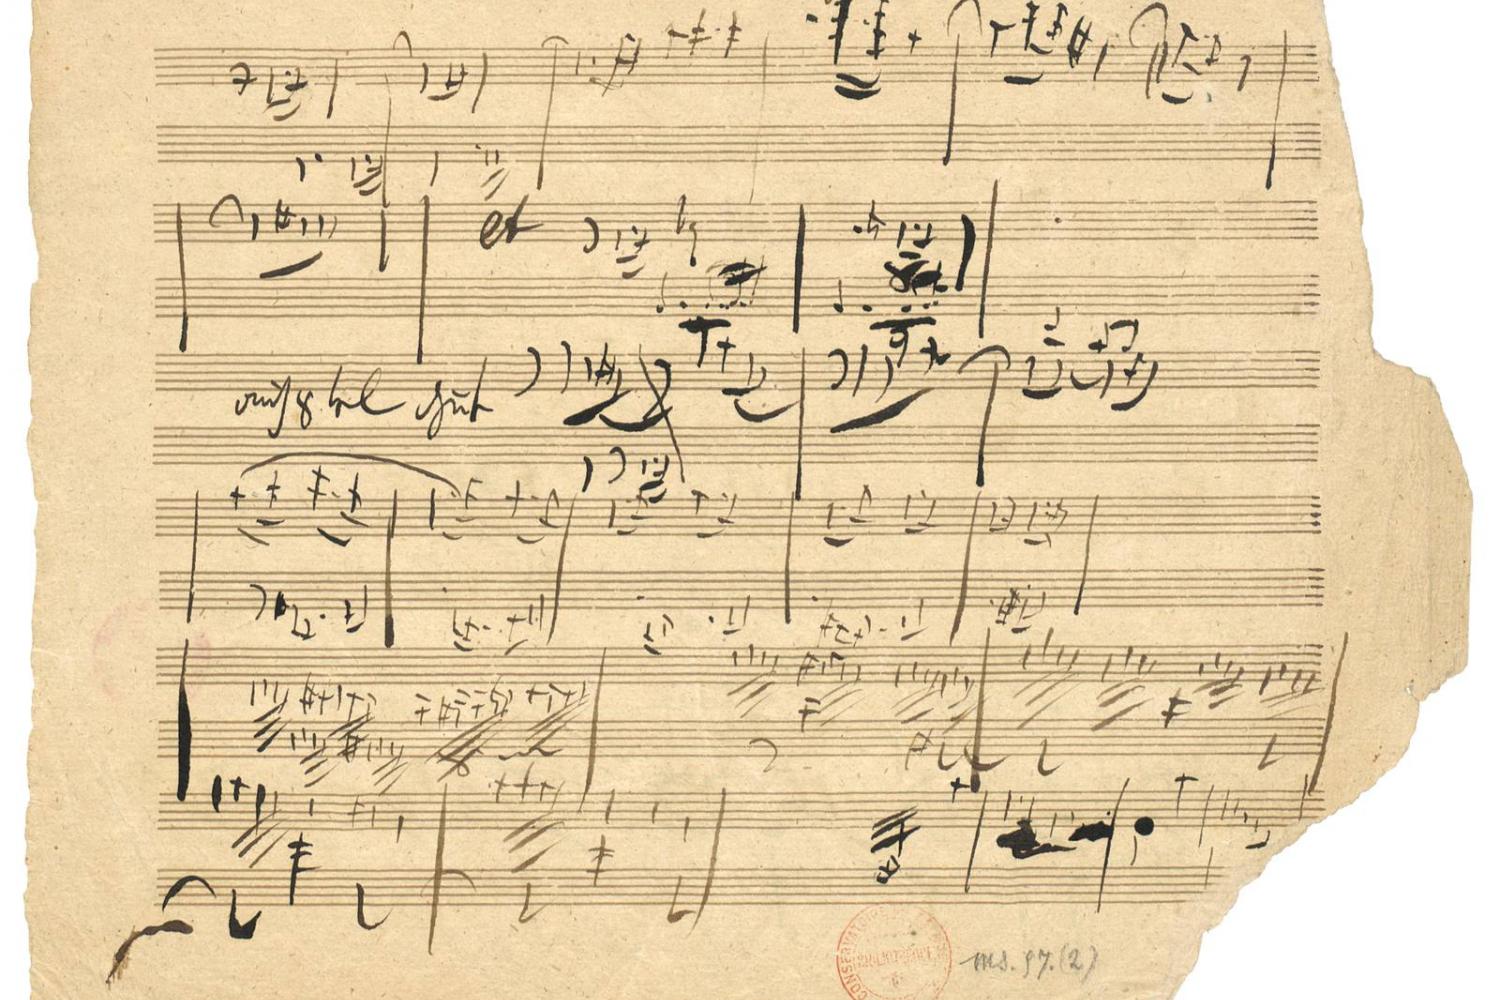 Beethoven. Manuscrit autographe, Symphonie no 9 op. 125 : esquisses pour le 1er mouvement. -  - BnF, département de la Musique